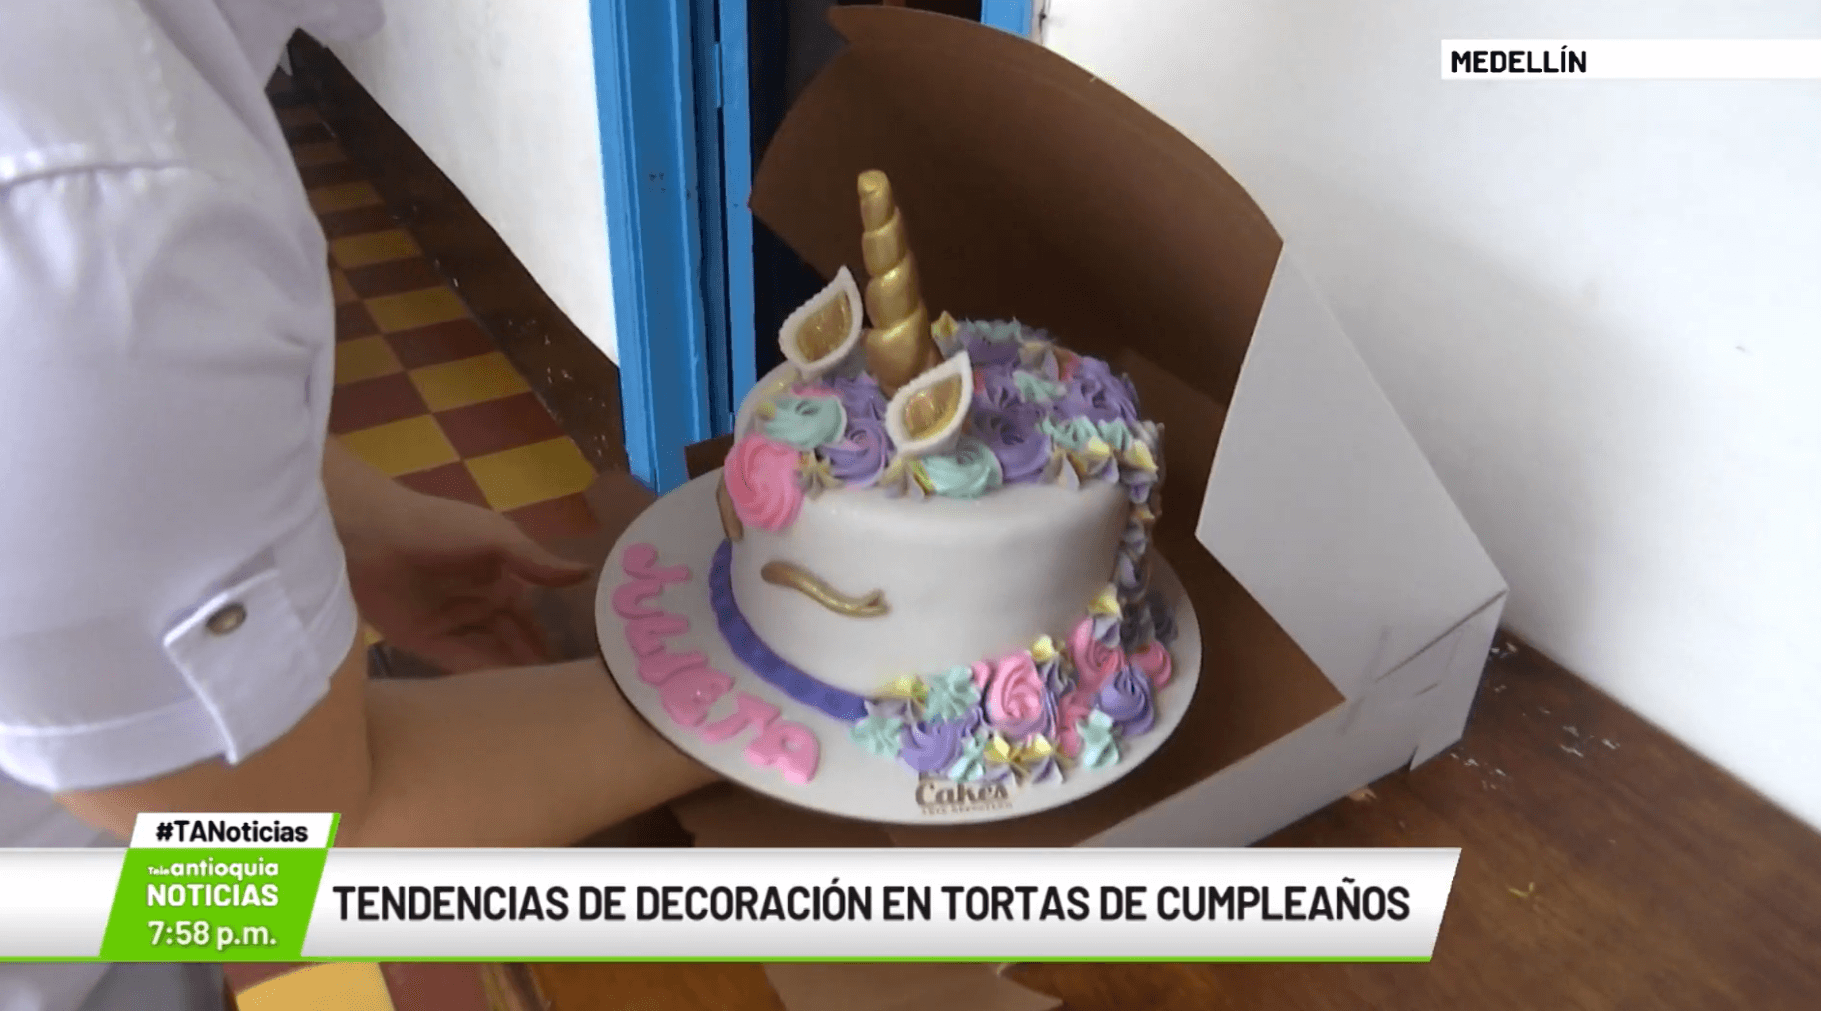 Tendencias en decoración en tortas de cumpleaños